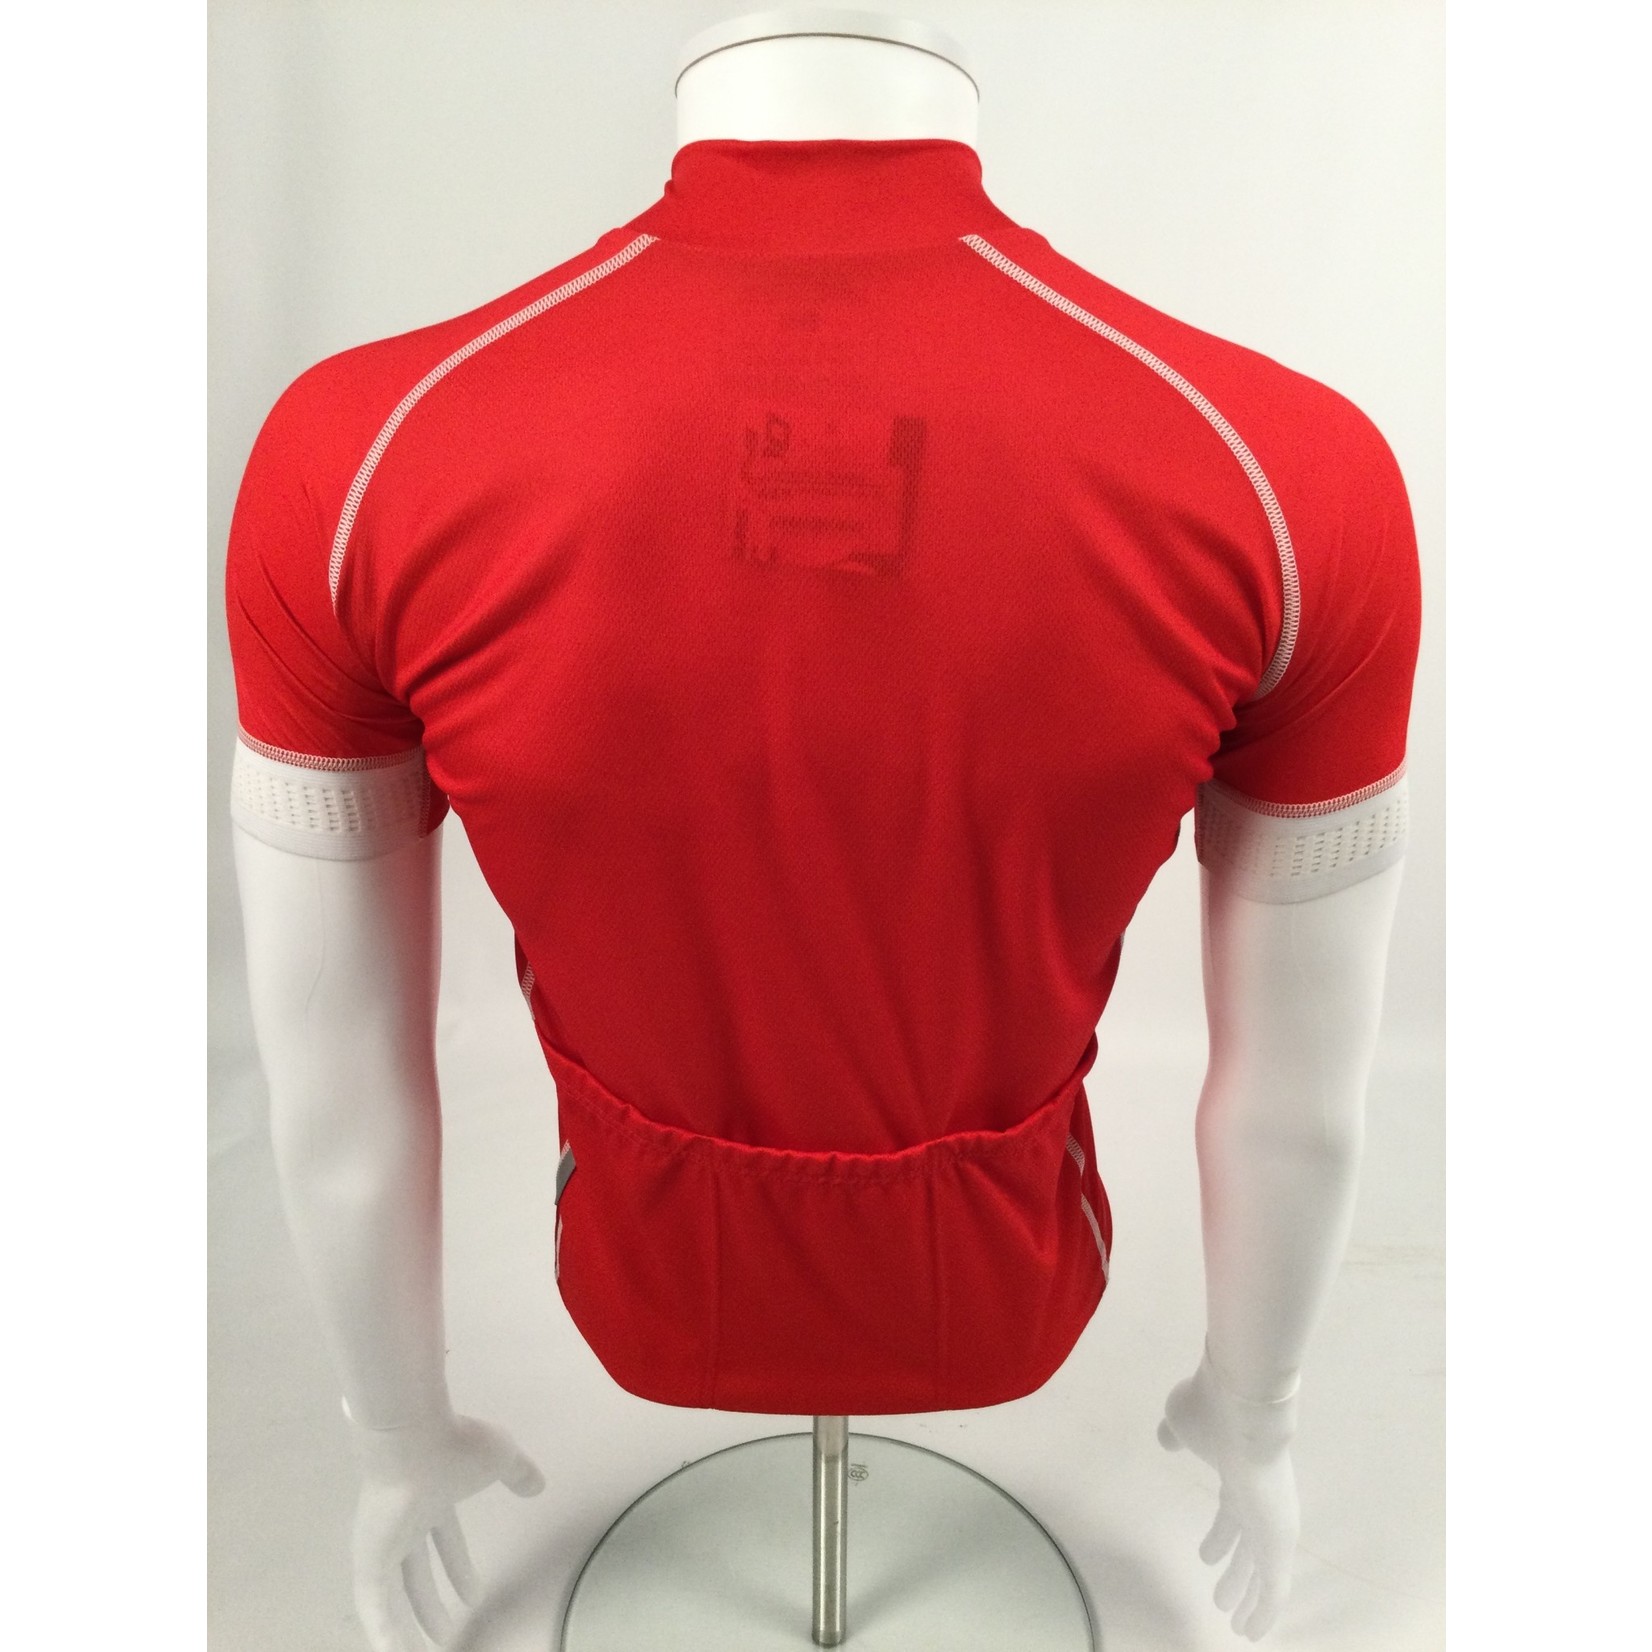 Doltcini Doltcini Red Pro Short Sleeved Jersey- Medium